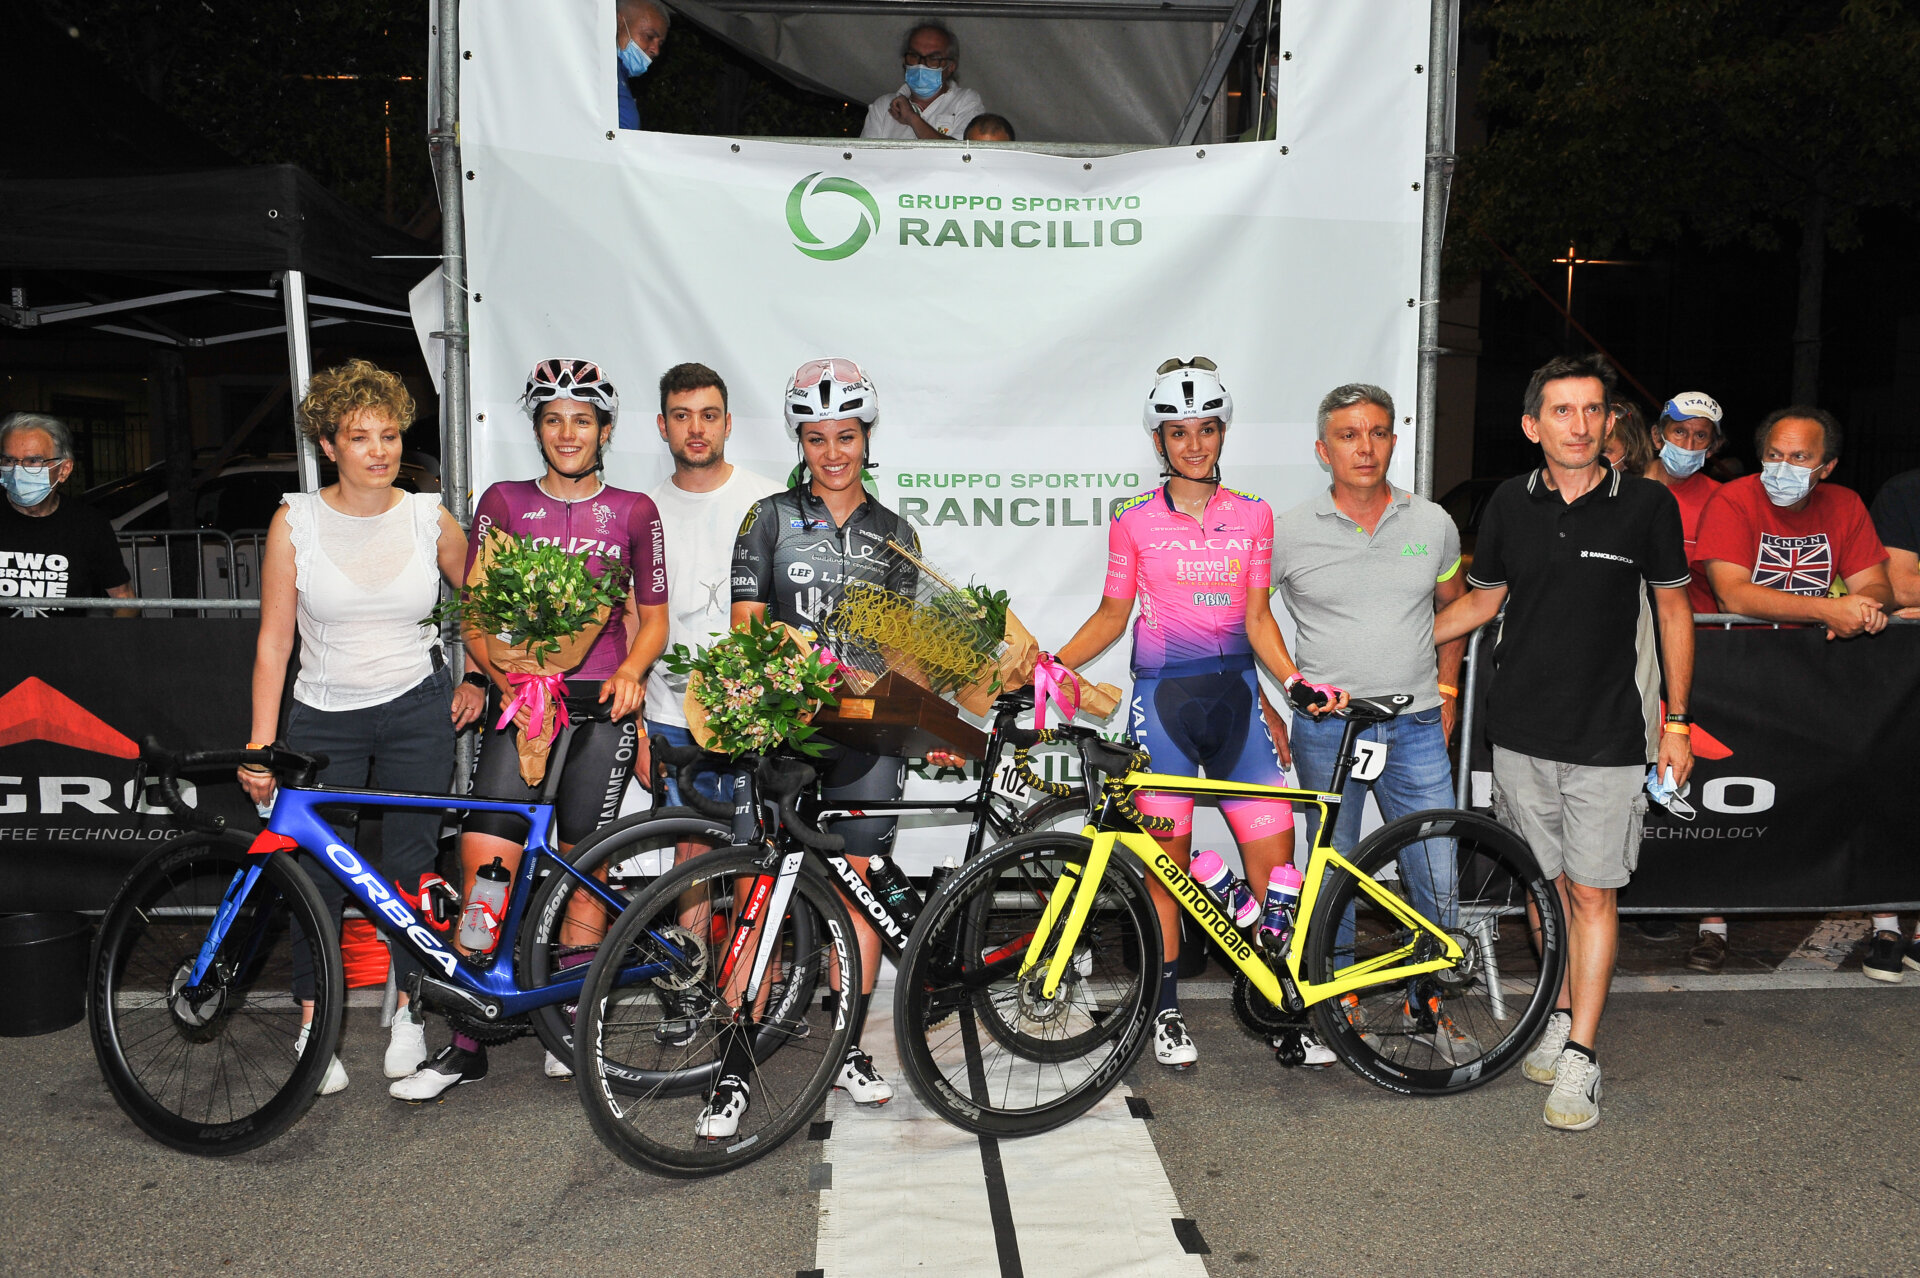 2021 06 25 GS Rancilio - 4° Trofeo Rancilio Ladies adrena pura a Parabiago 2